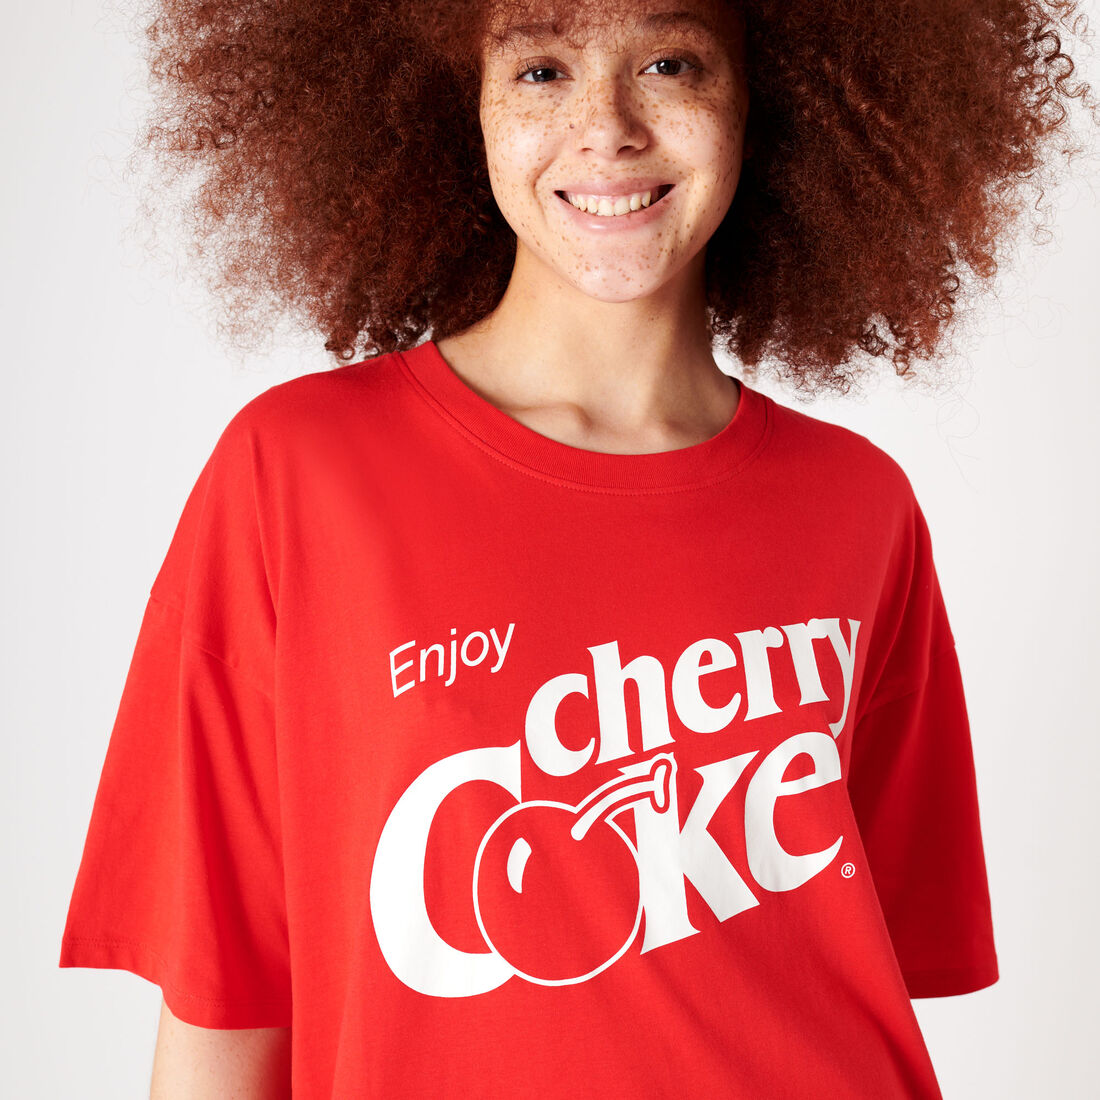 Long Coca-Cola t-shirt;